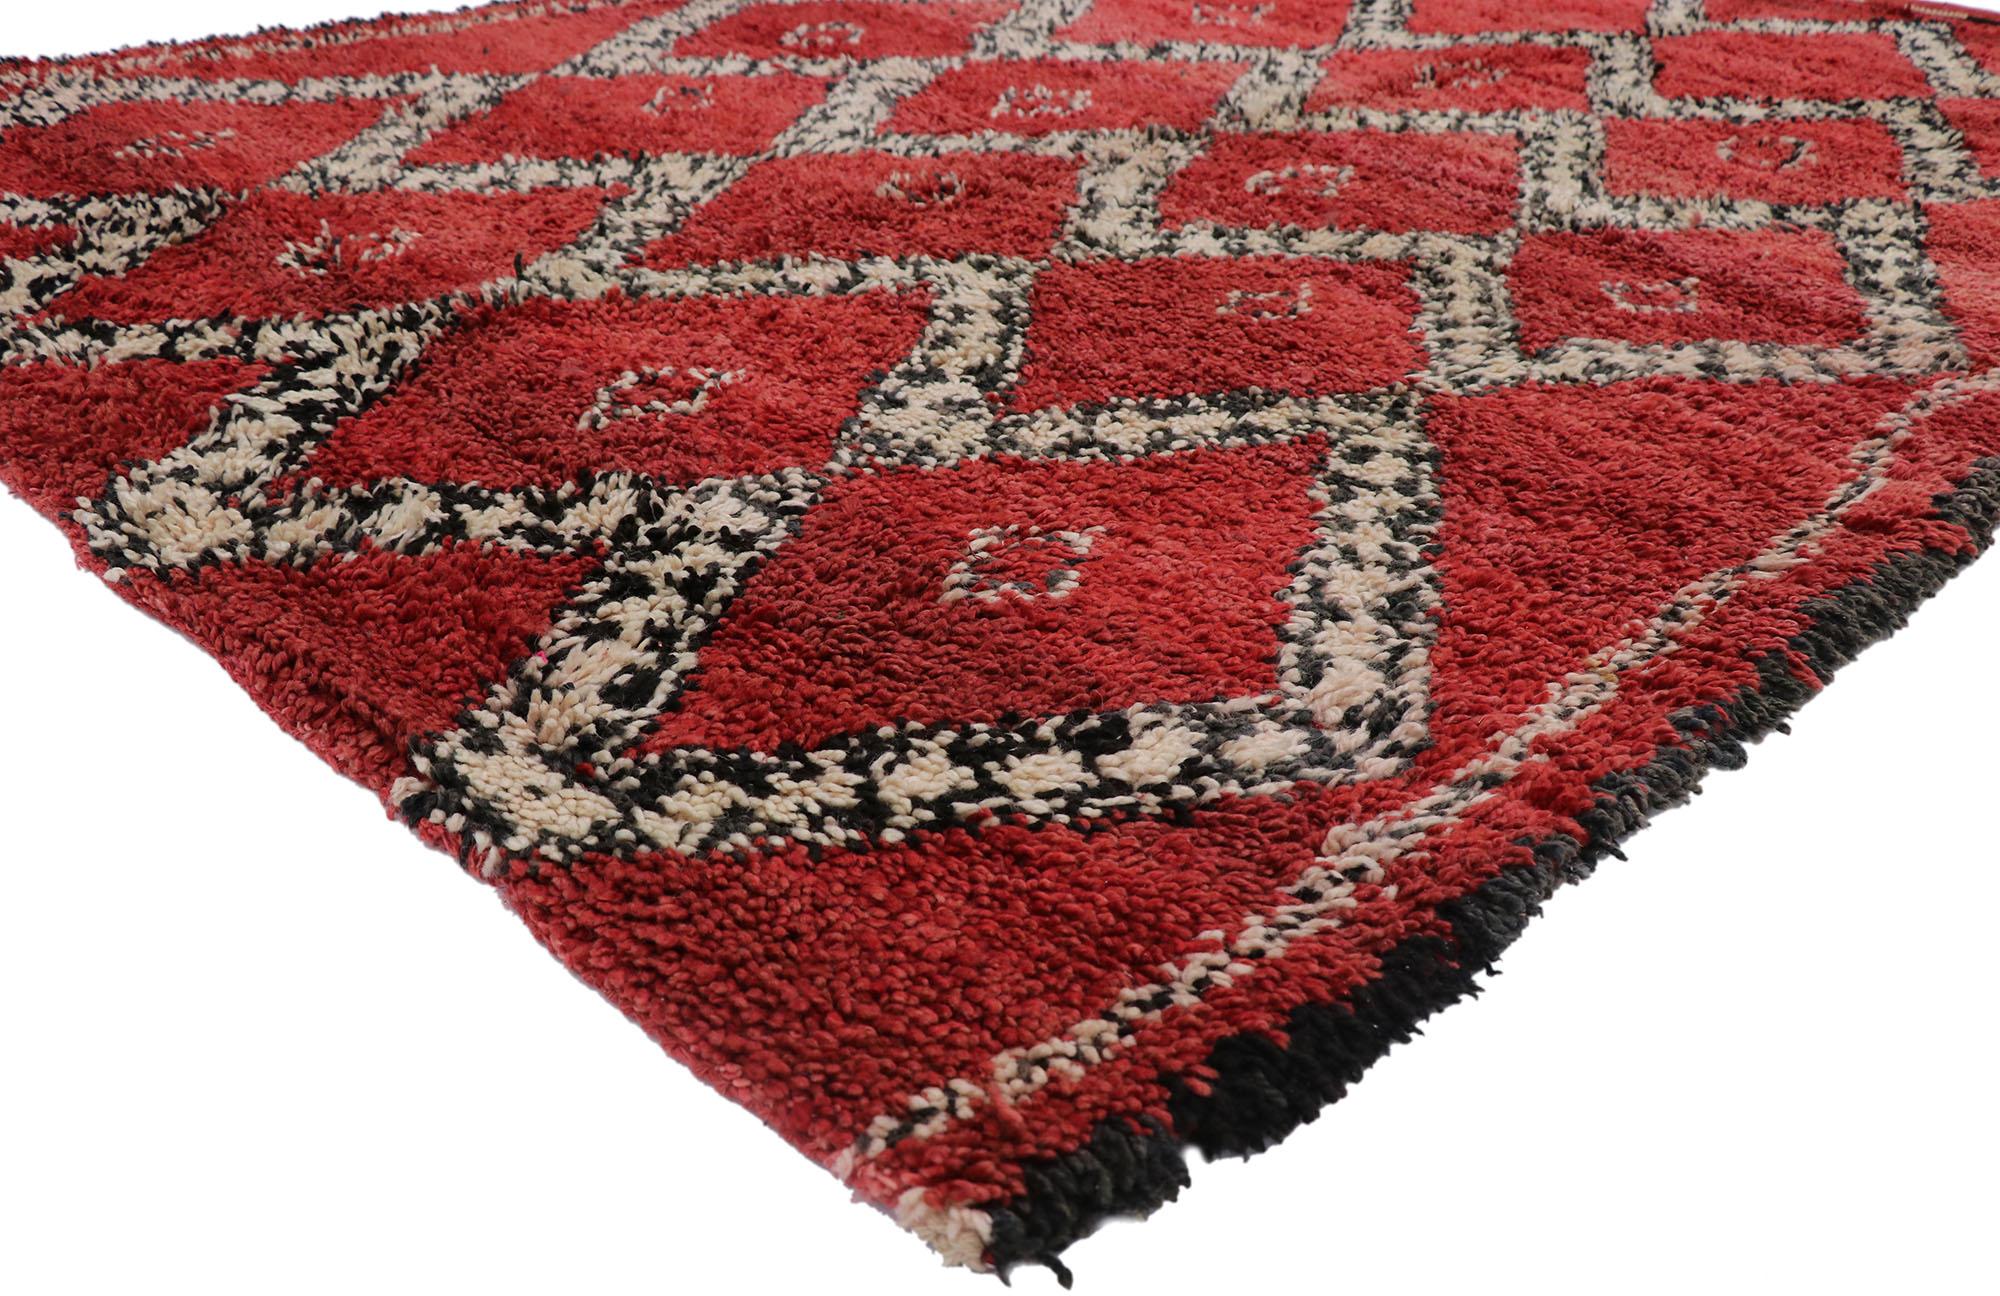 21262 Marokkanischer Vintage-Teppich Beni Ourain, 06'06 x 09'00. Zusammenhängende Gemütlichkeit trifft auf Boho-Luxus in diesem handgeknüpften marokkanischen Beni Ourain-Teppich aus Wolle im Vintage-Stil. Das inhärente Tribal-Muster und die